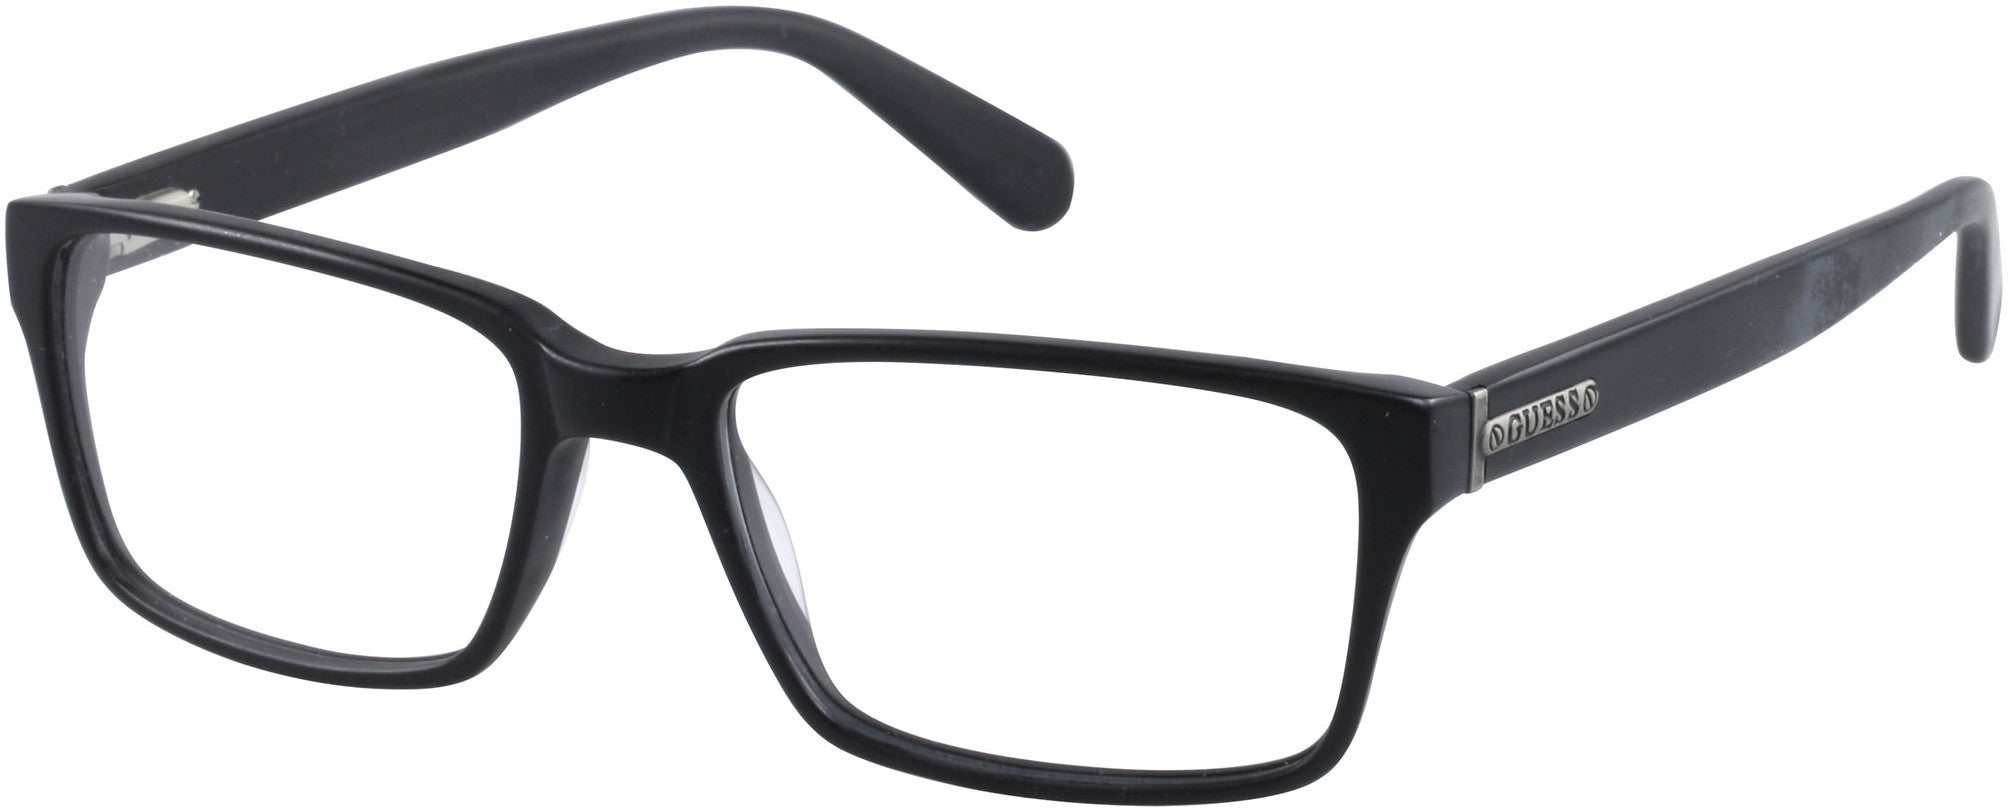 Guess GU1843 Eyeglasses B84-B84 - Black